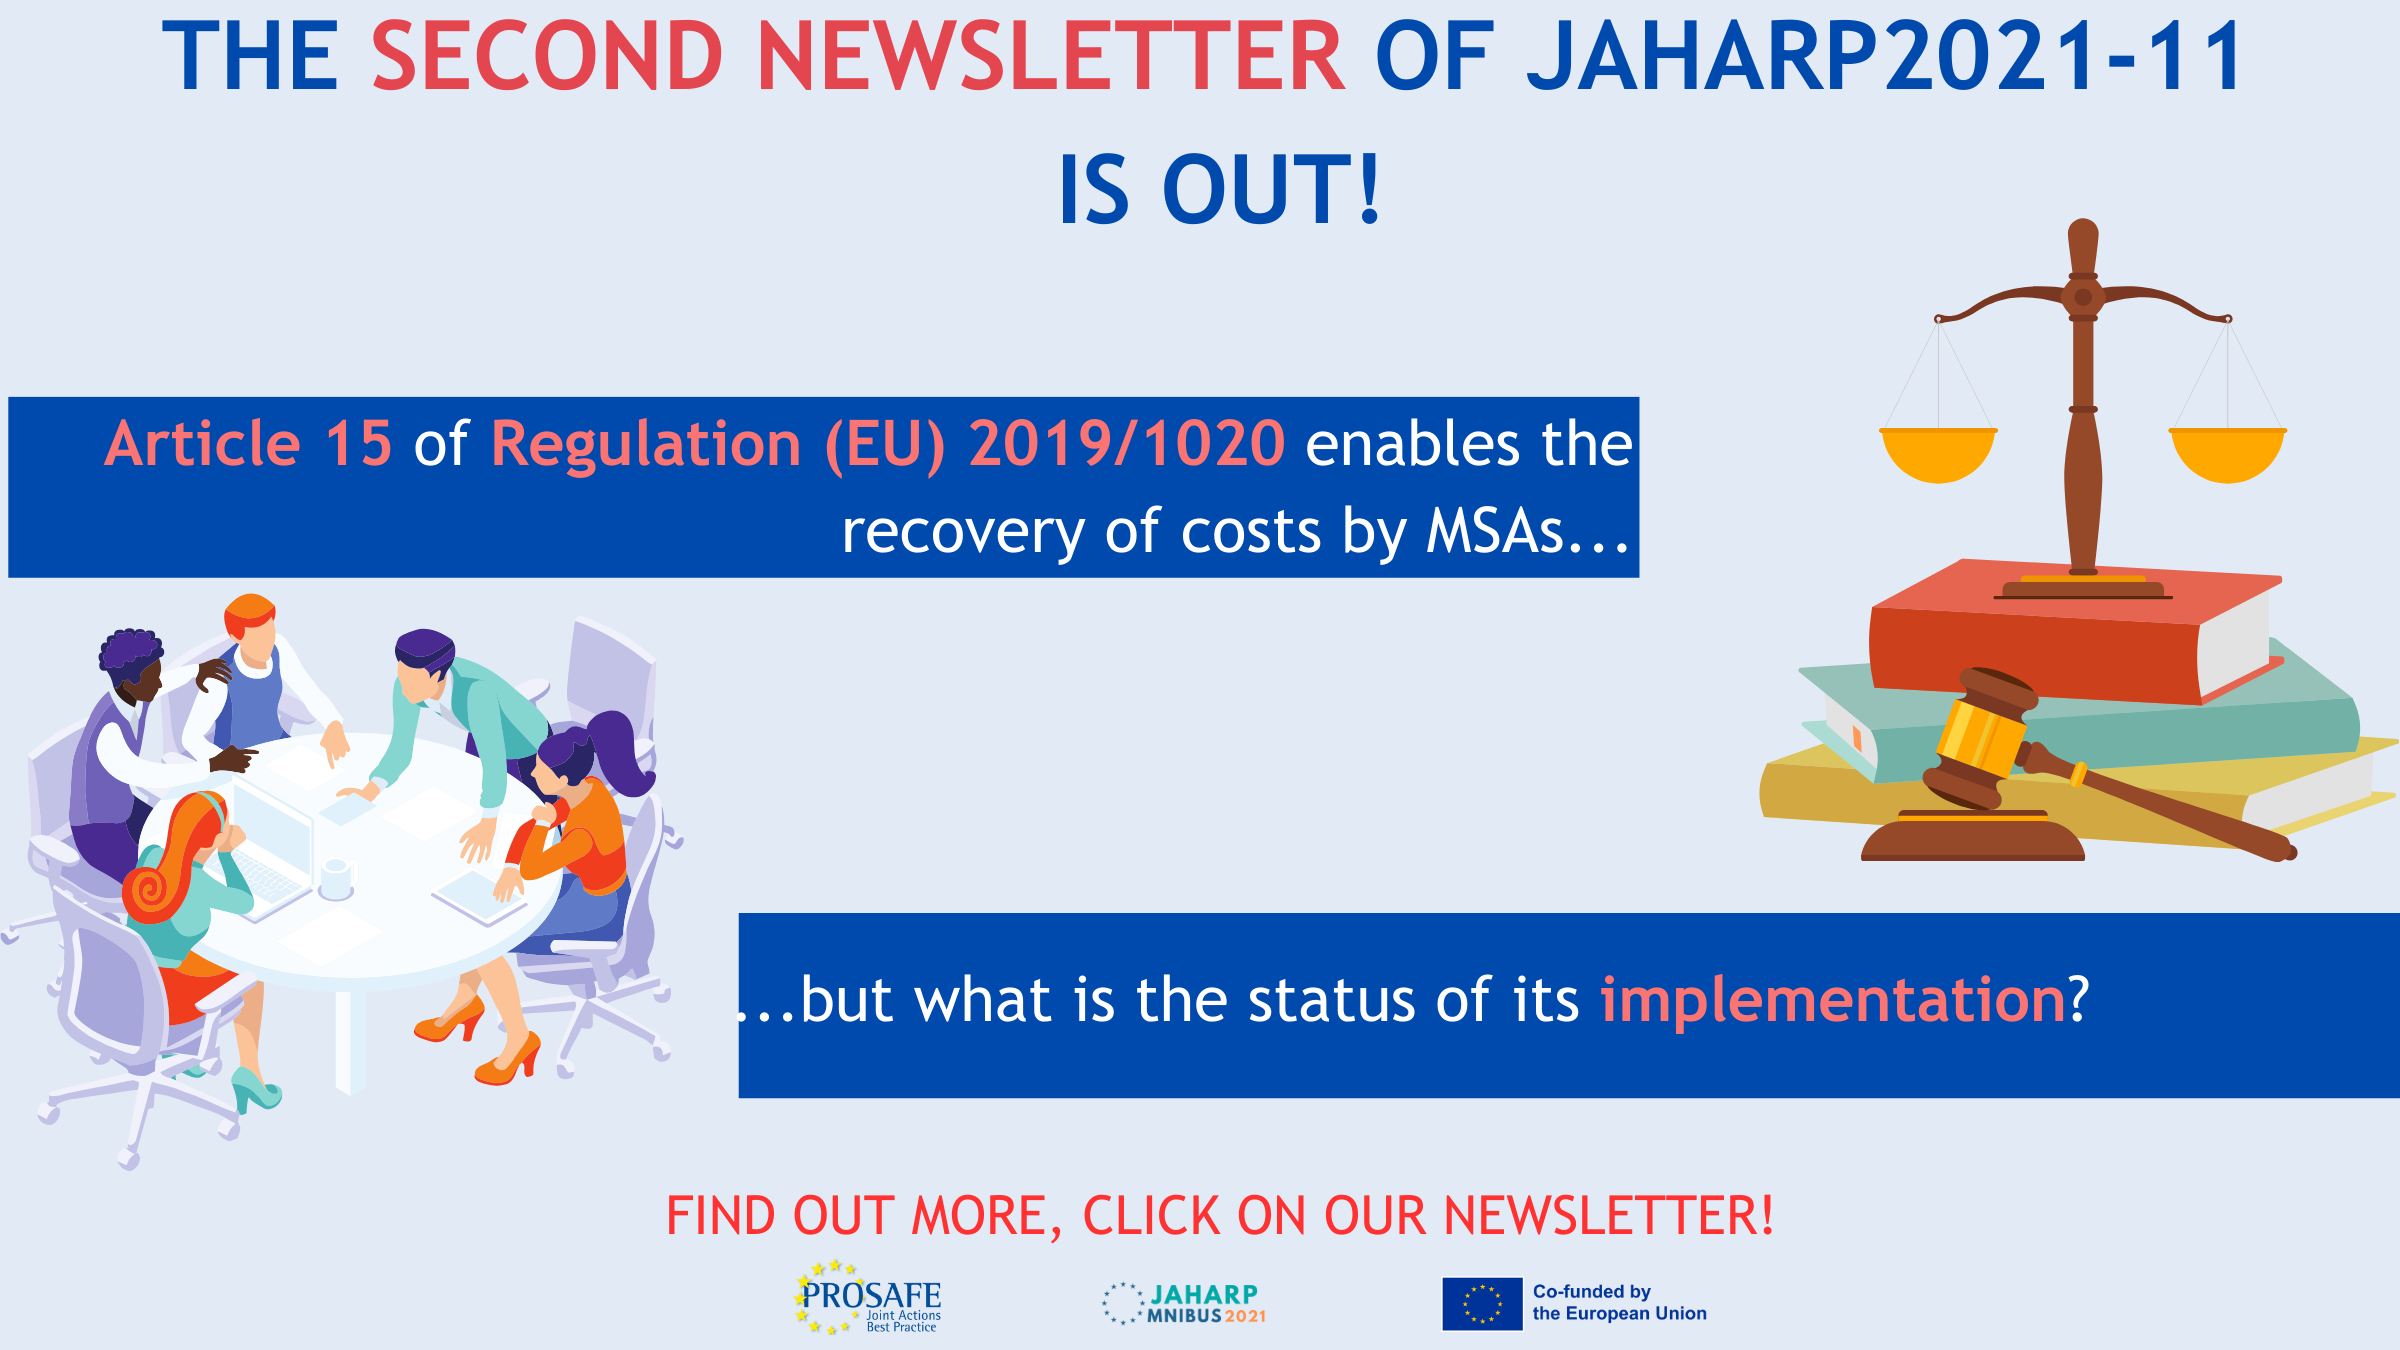 Second Newsletter JAHARP2021 10